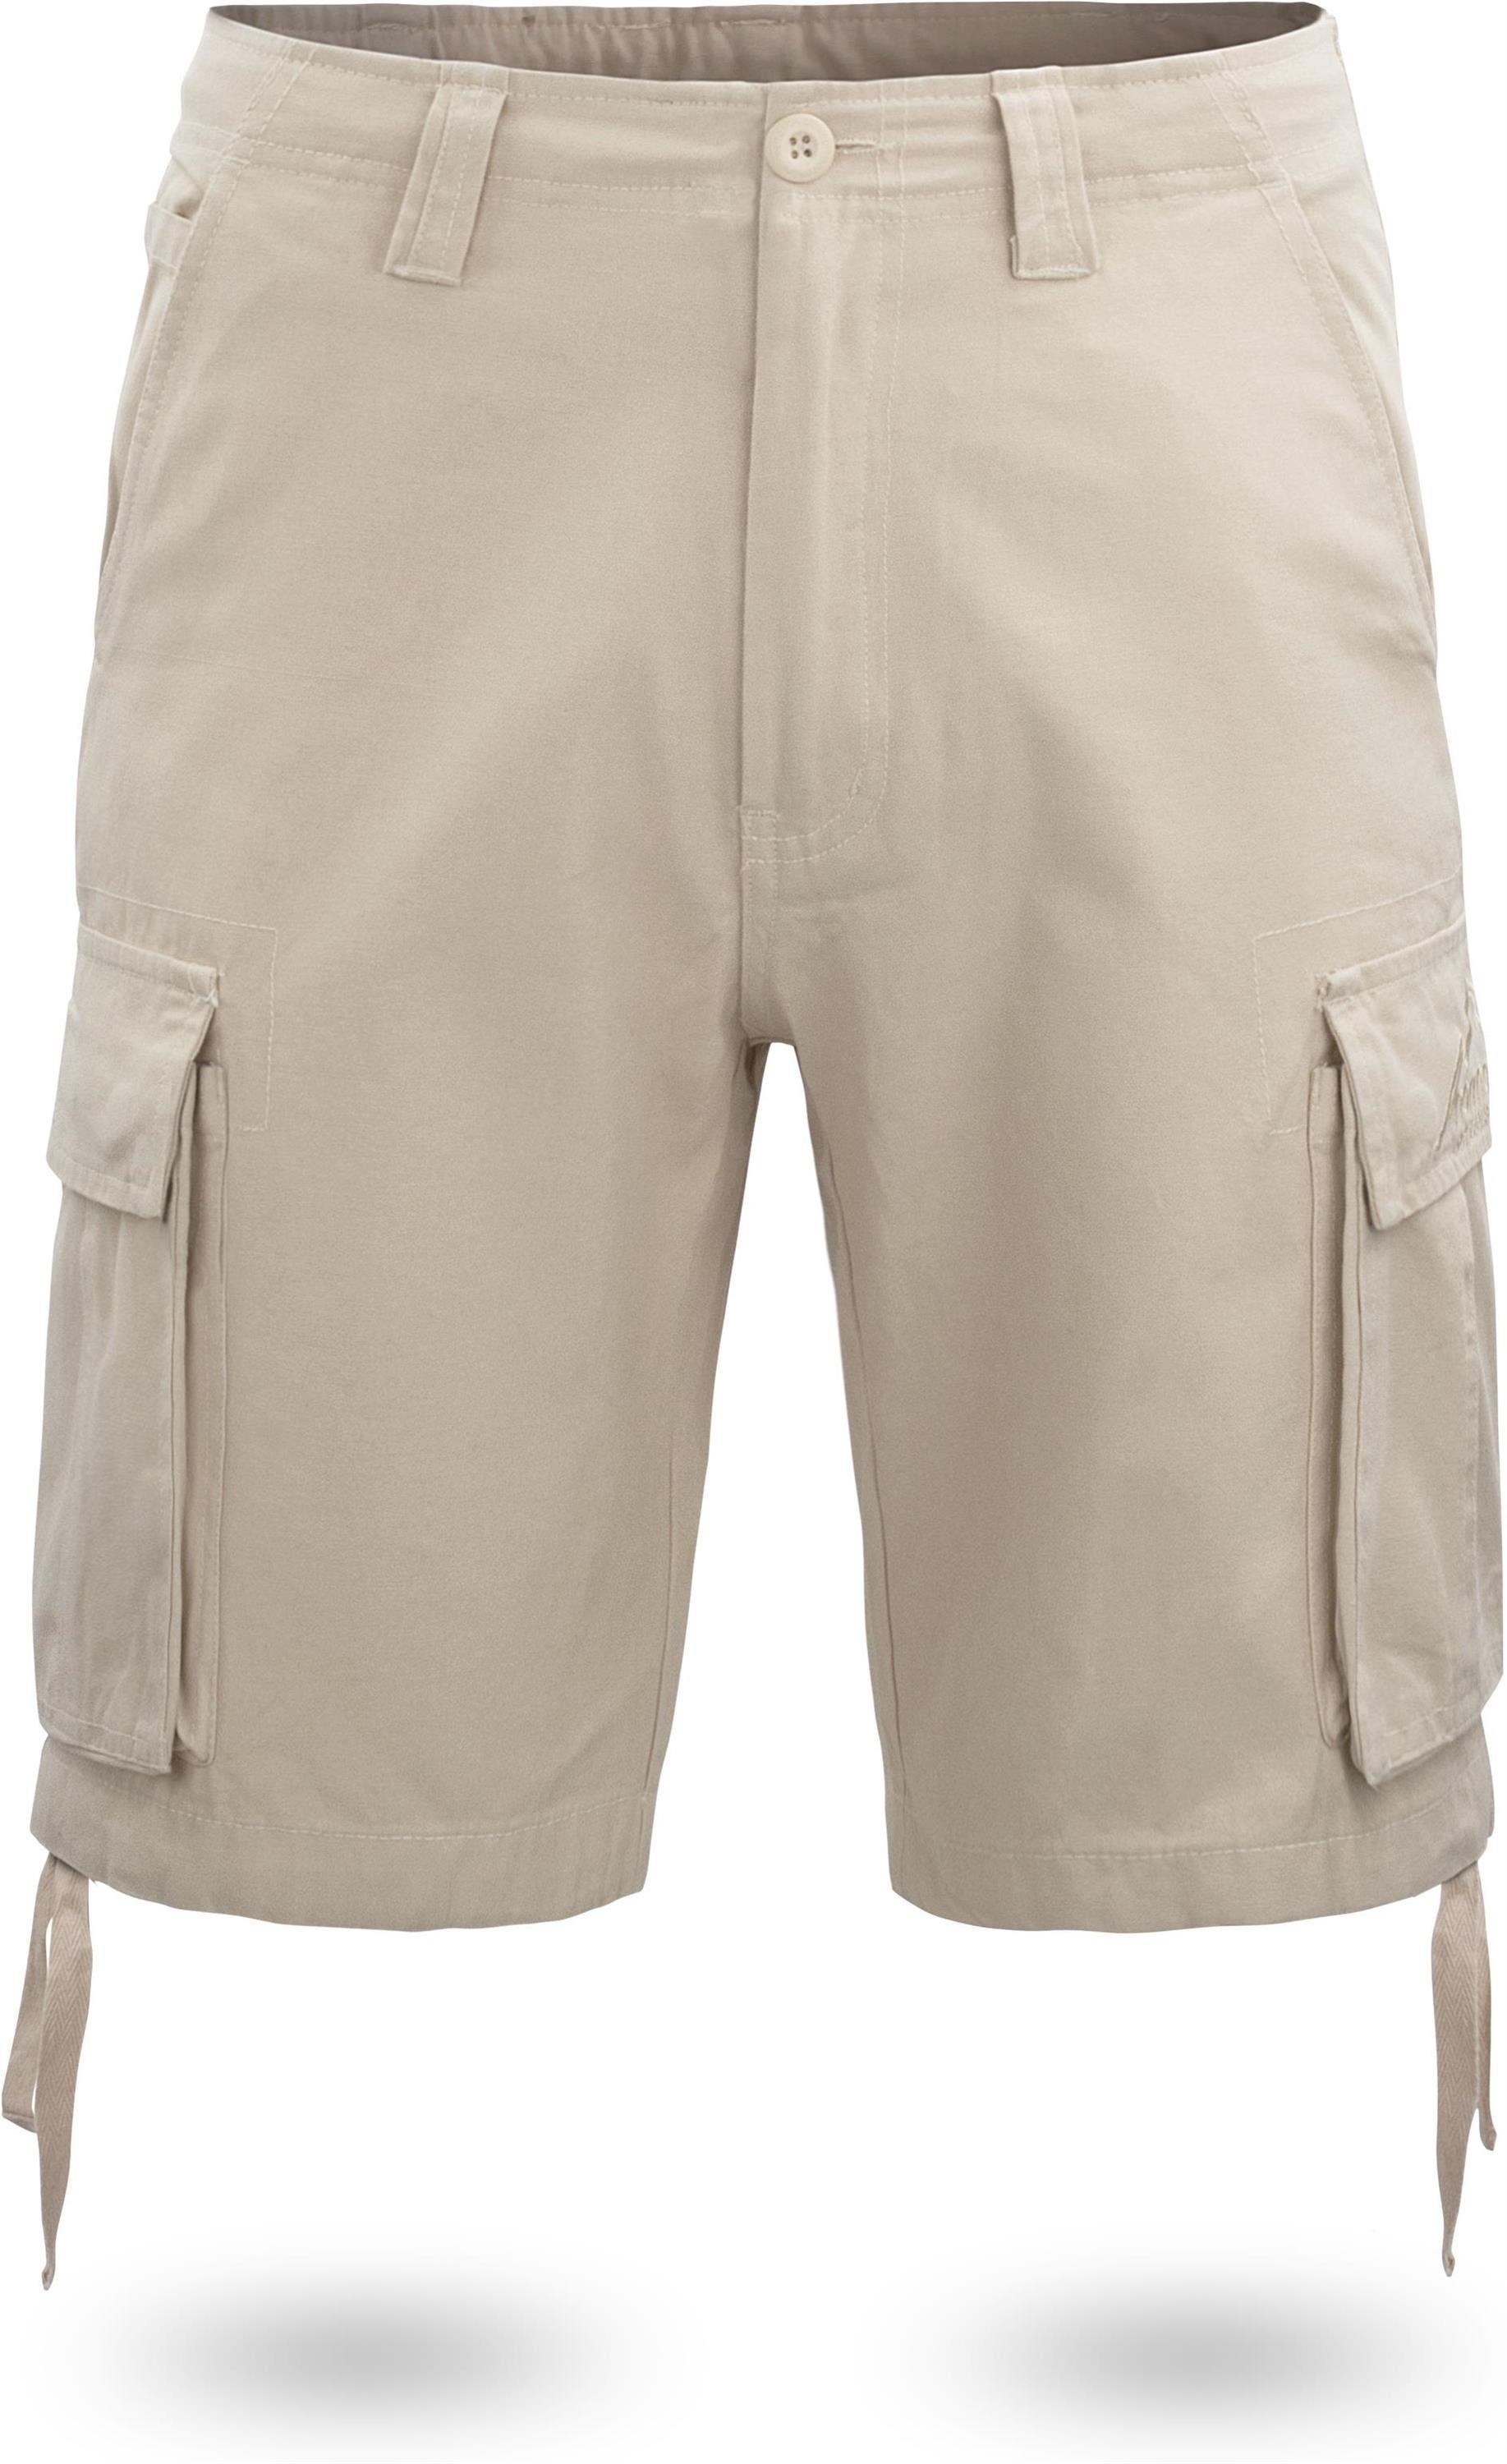 normani Bermudas Herren Shorts Kalahari Vintage Shorts kurze Sommershorts mit Cargotaschen aus 100% Bio-Baumwolle Khaki | Bermudas